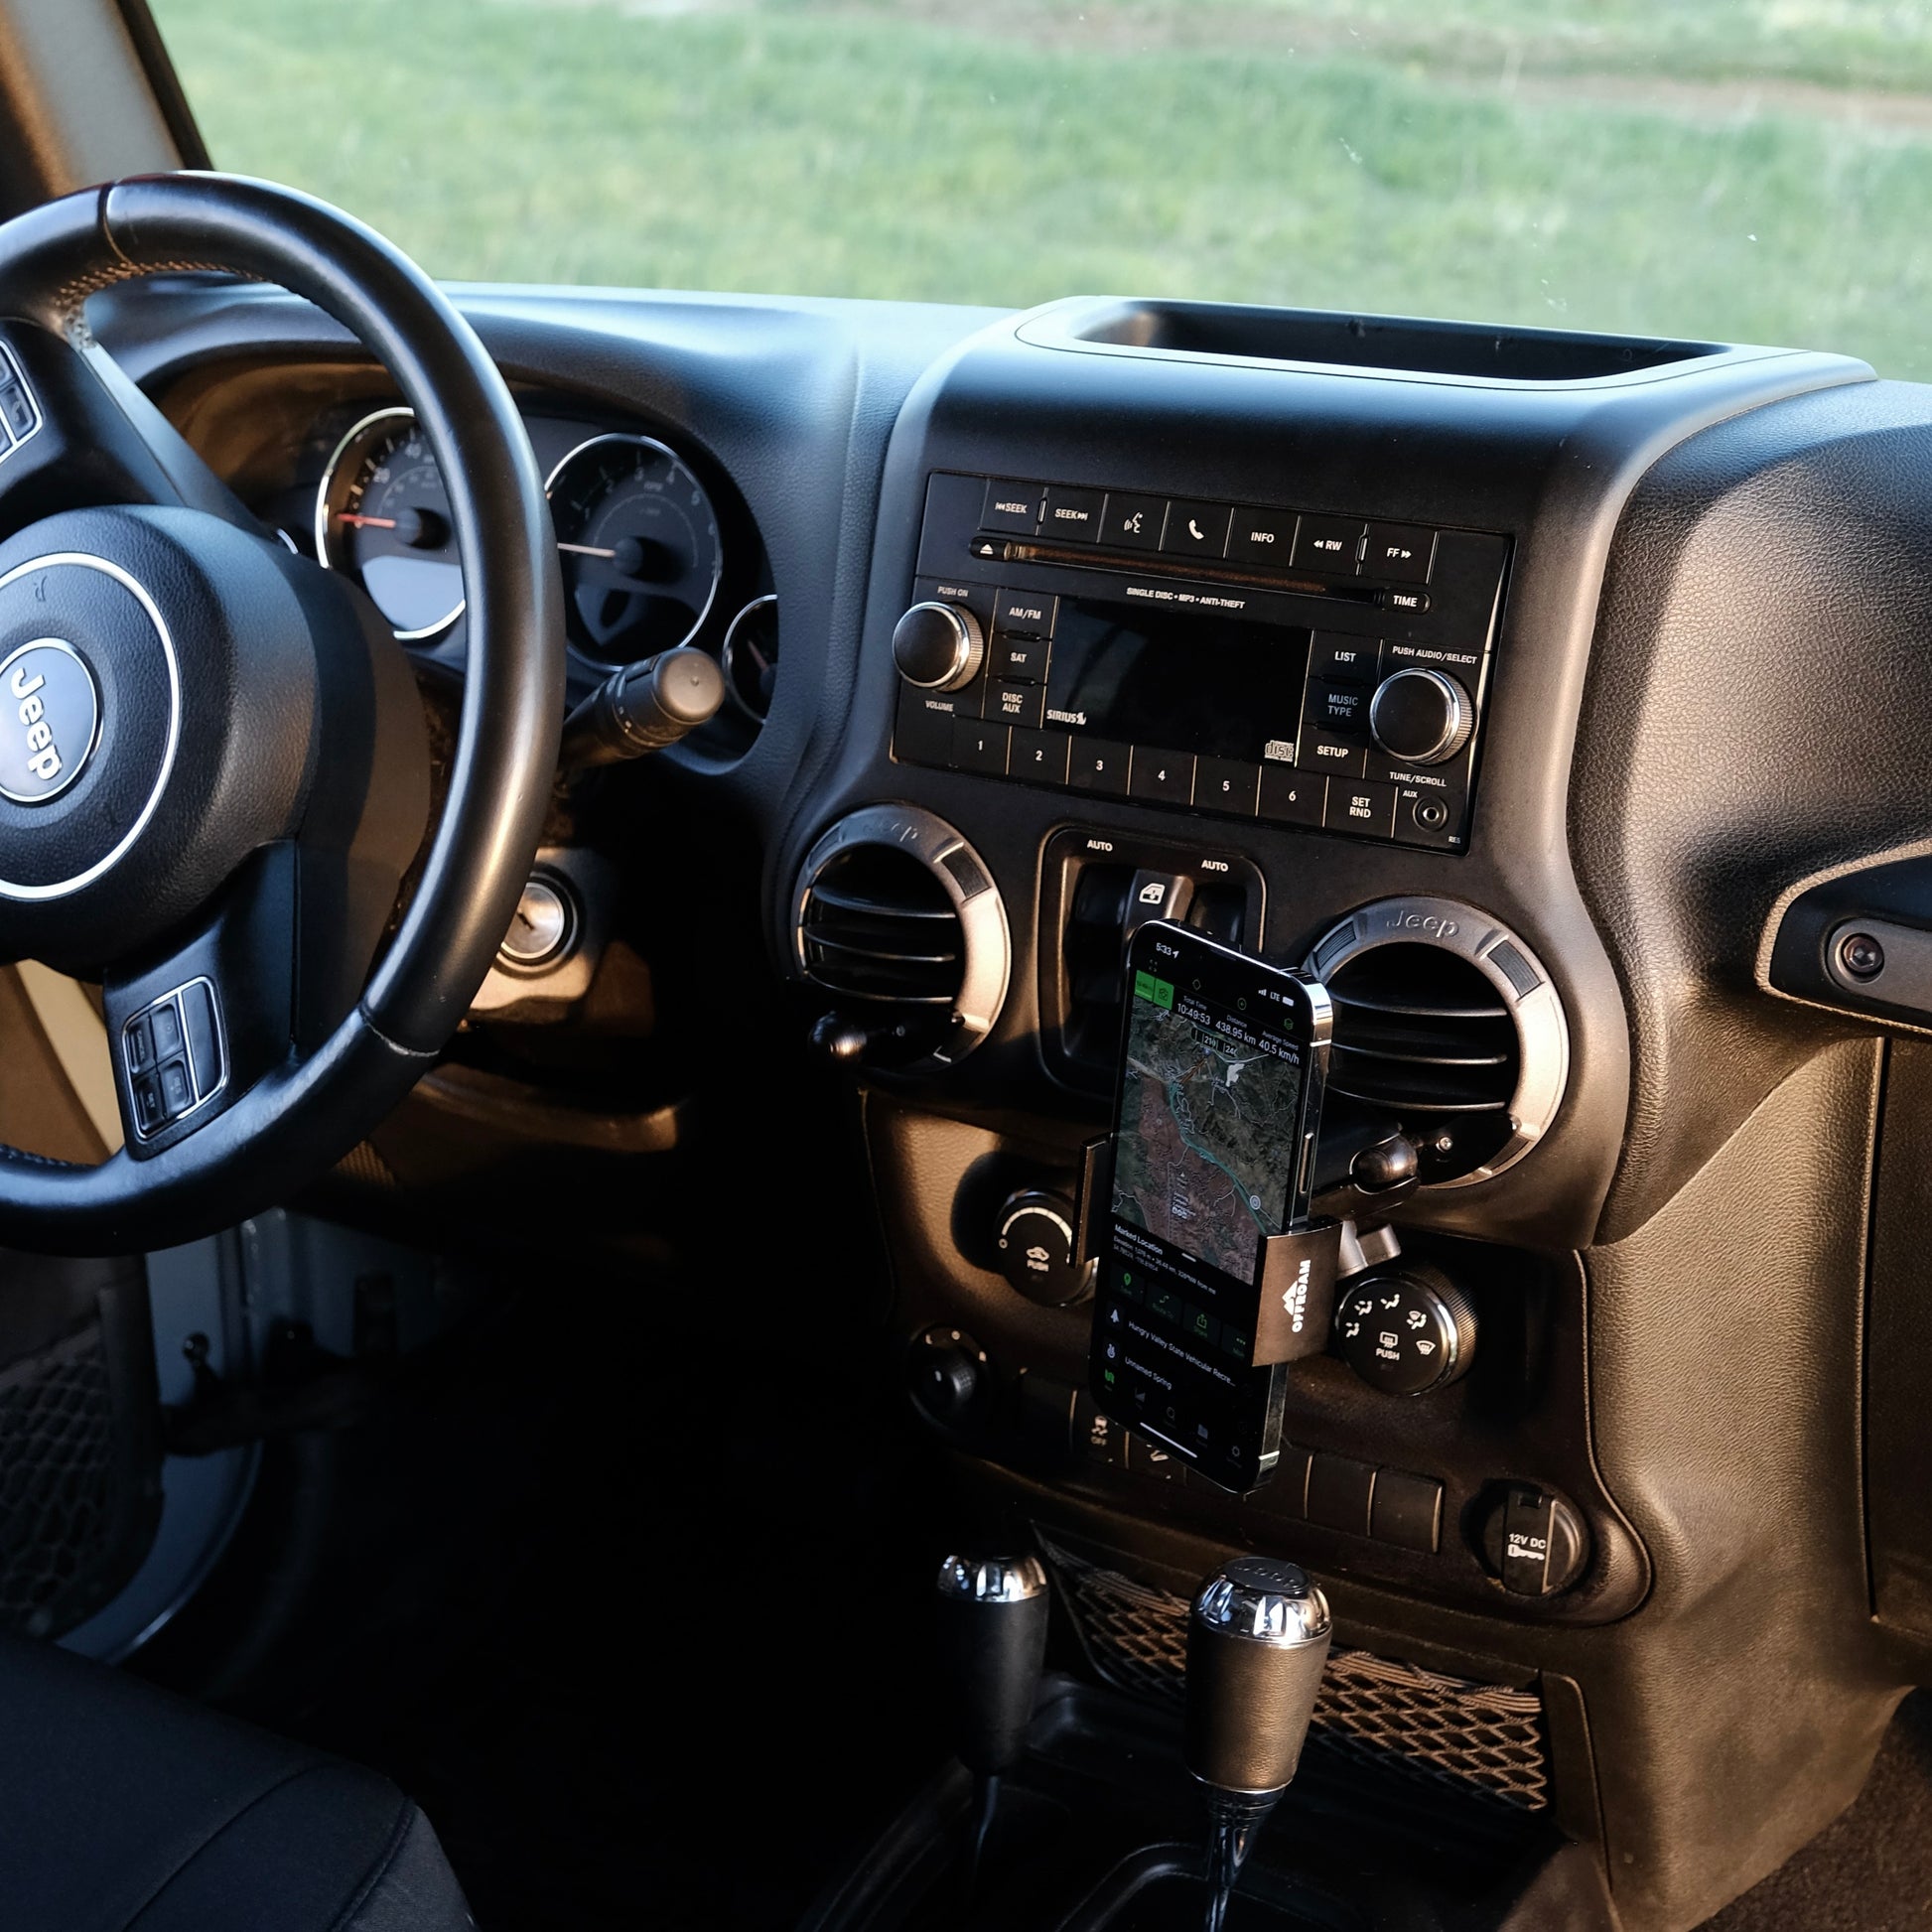 Jeep Wrangler JK/JKU 2011-2018 Phone Mount by Offroam